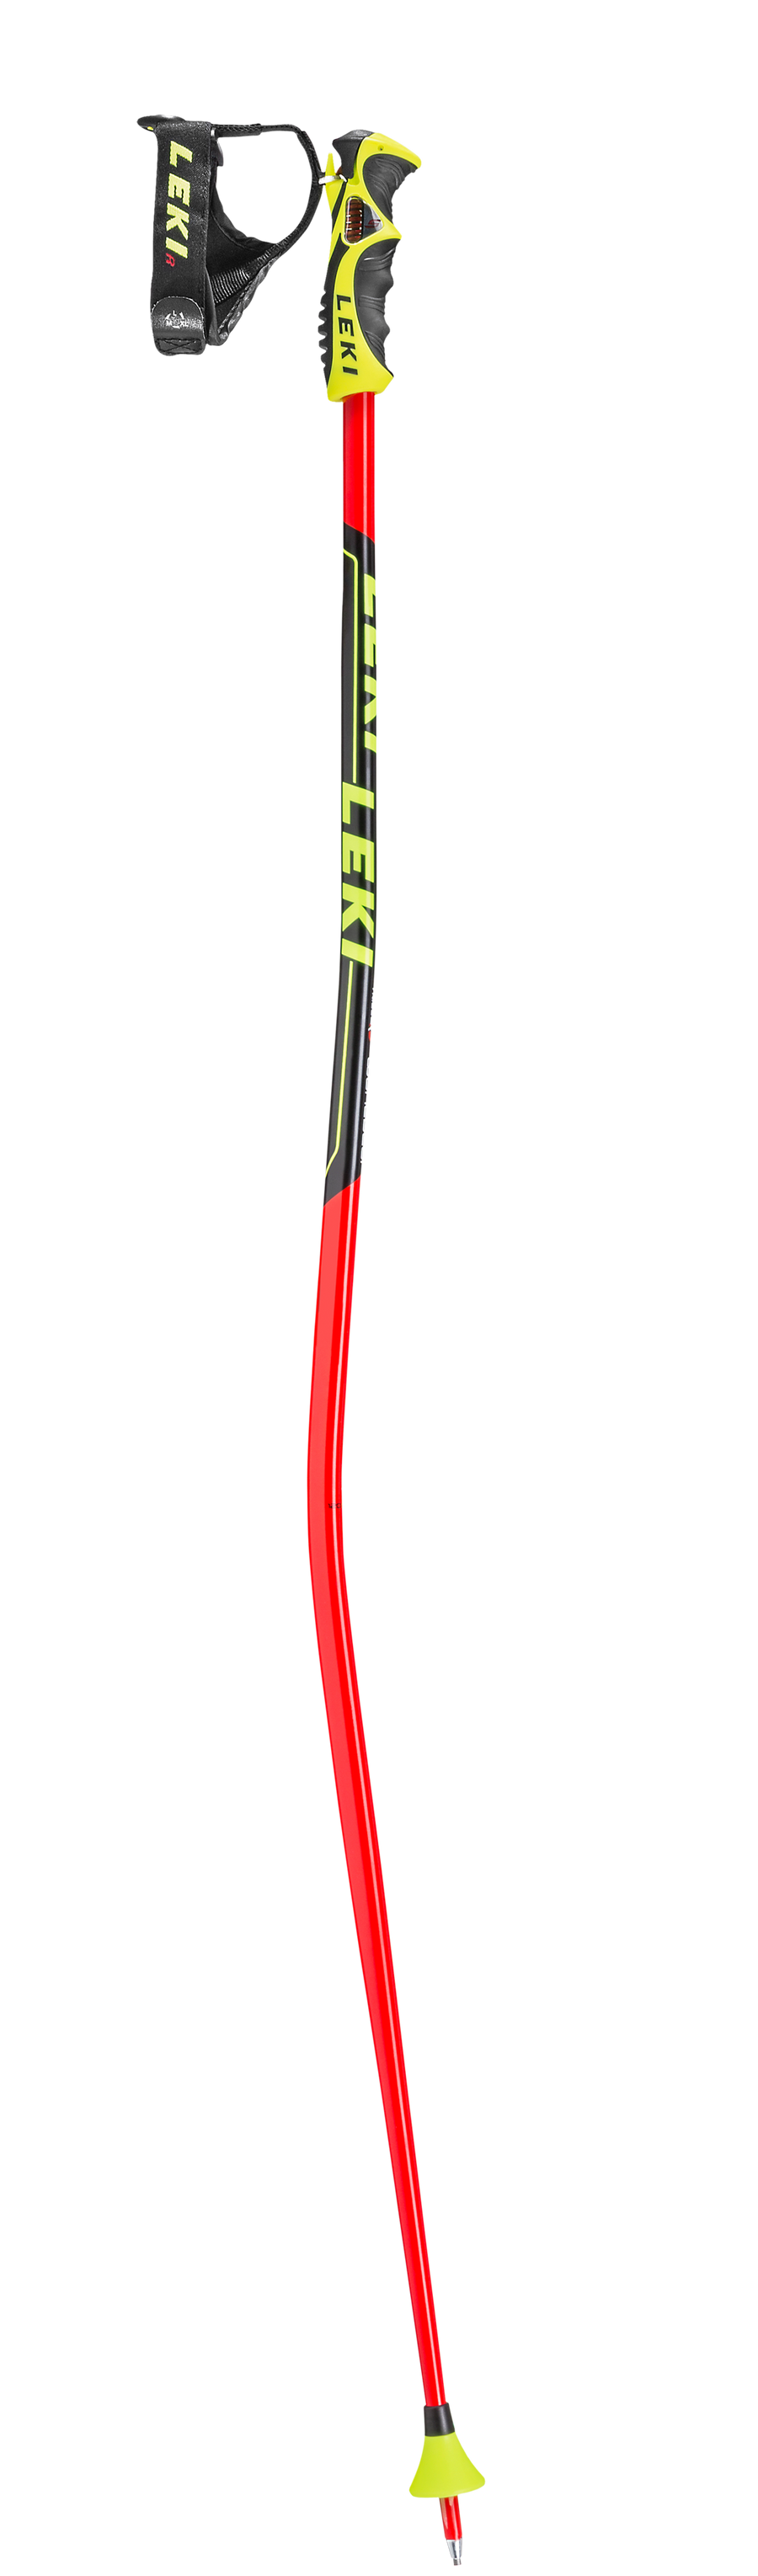 Leki World Cup GS Ski Poles